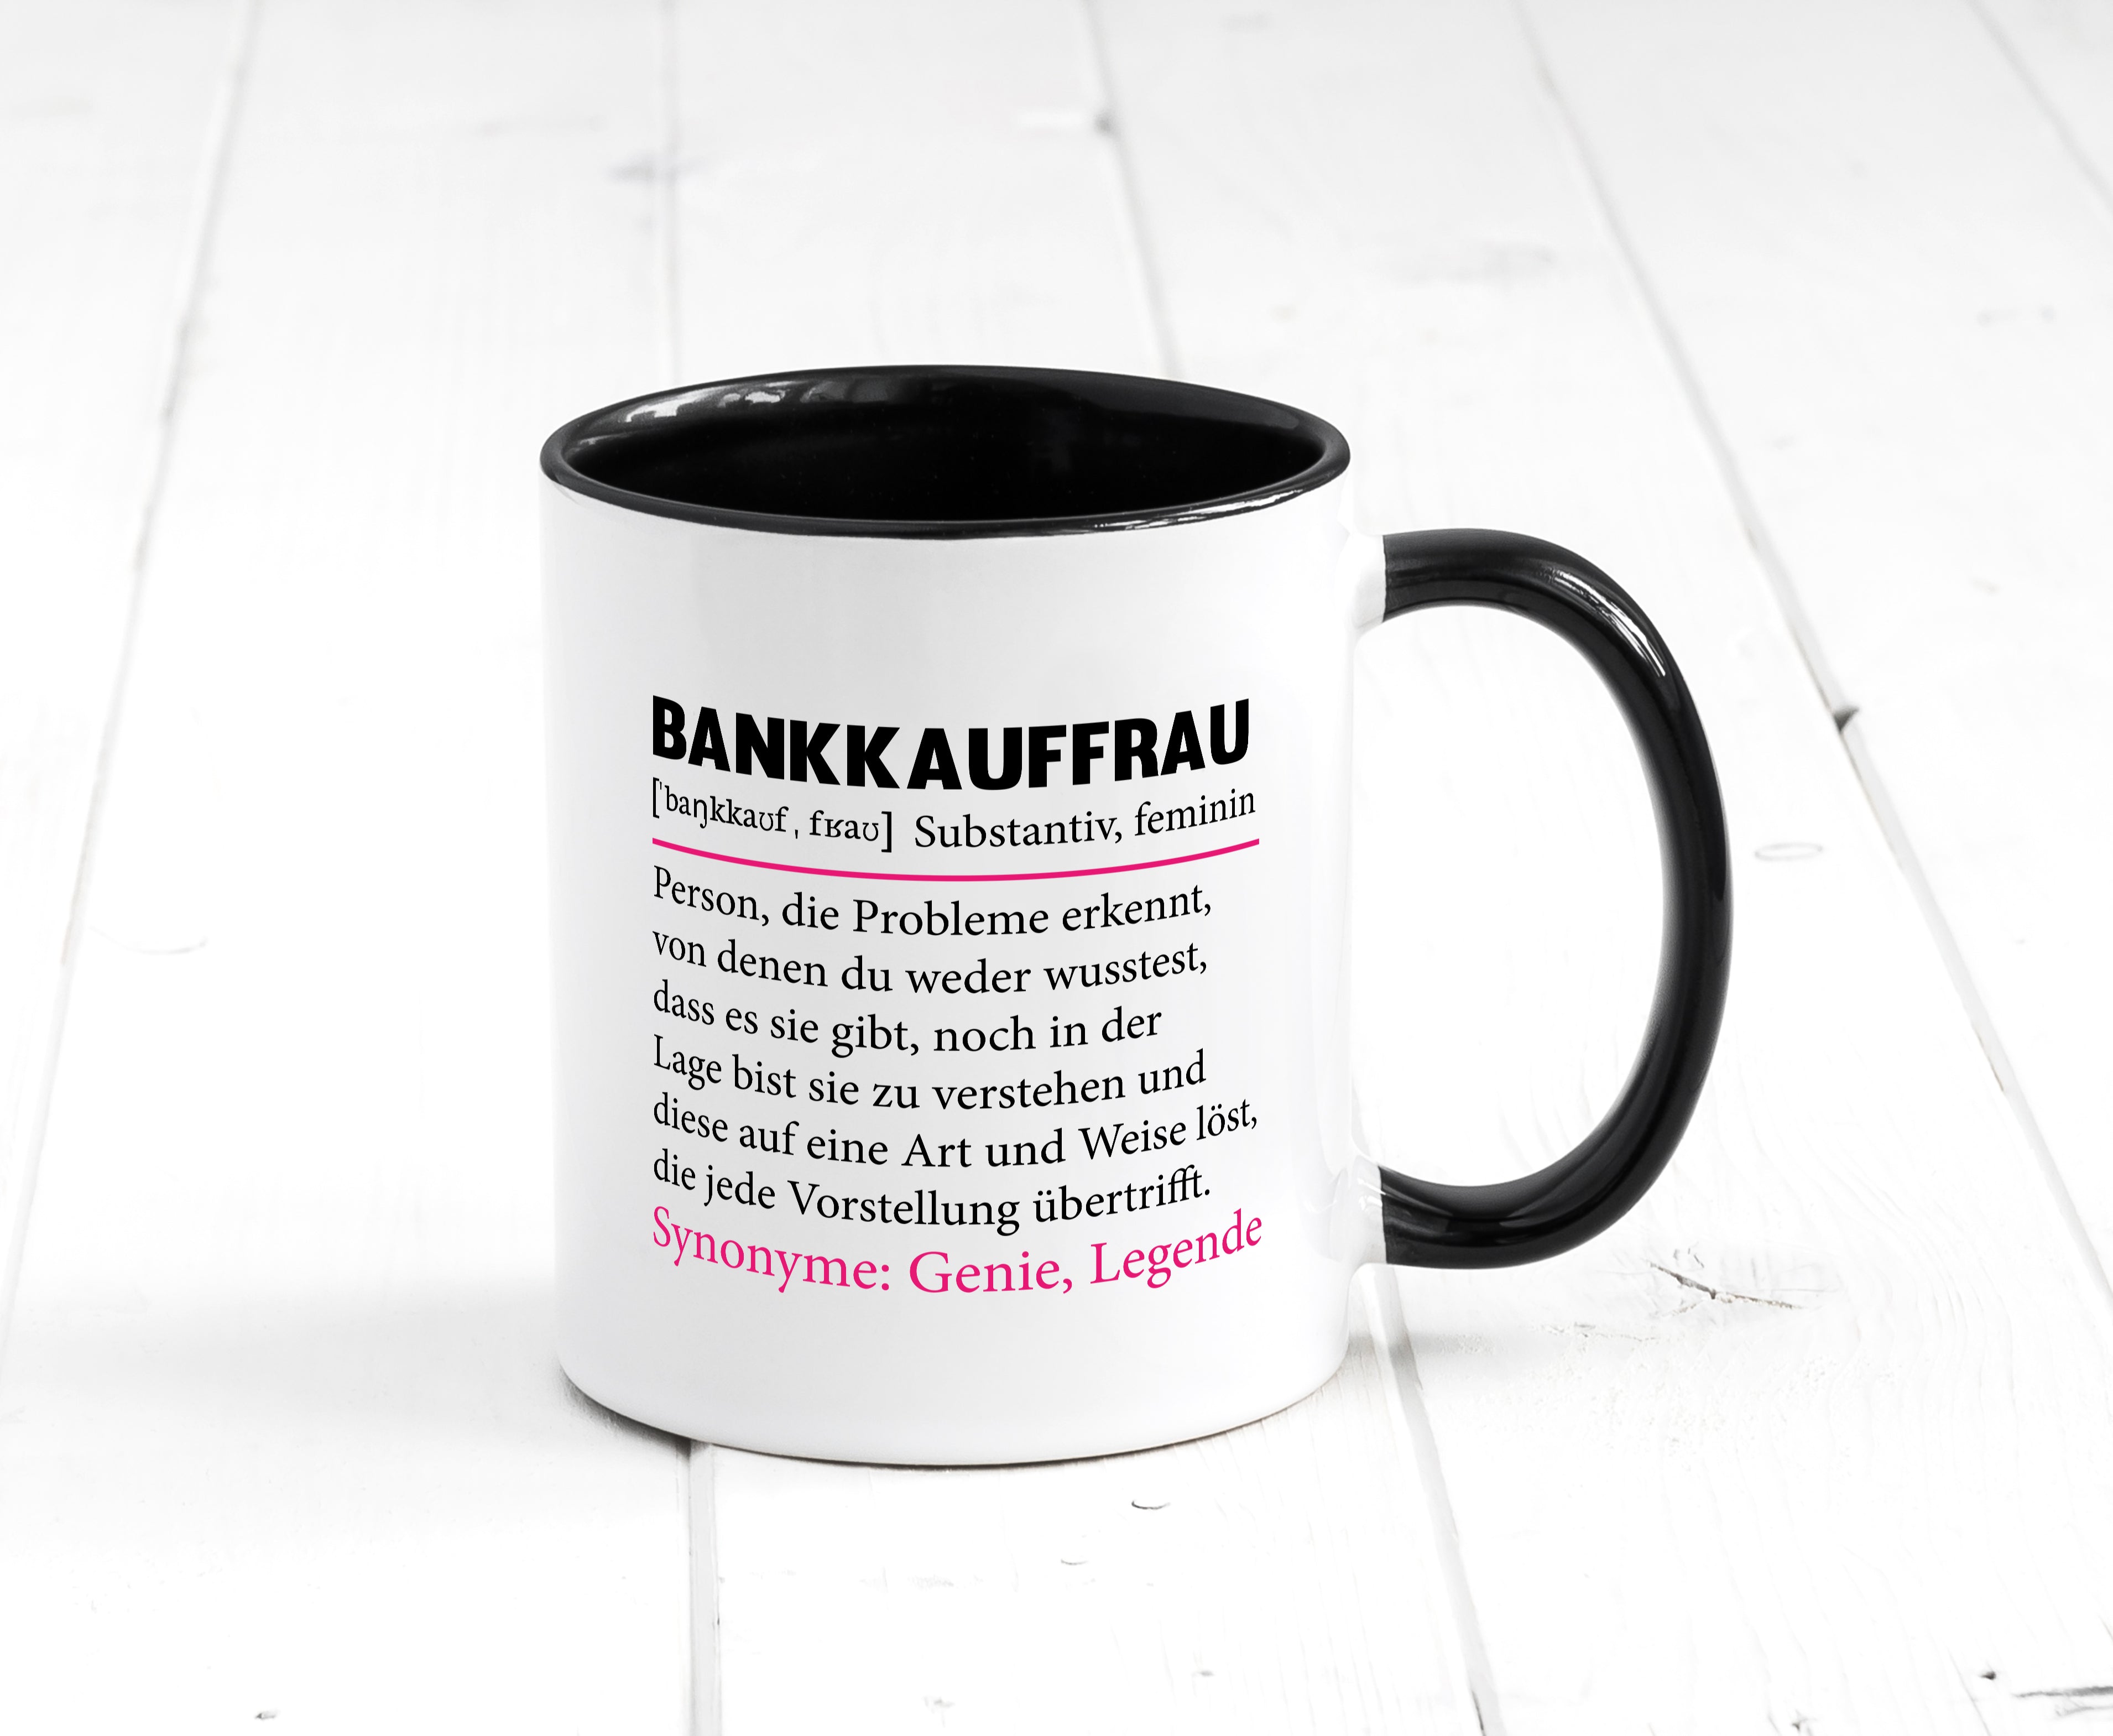 Bankkauffrau | Spruch Tasse | Kauffrau | Bank Kaufleute Tasse Weiß - Schwarz - Kaffeetasse / Geschenk / Familie